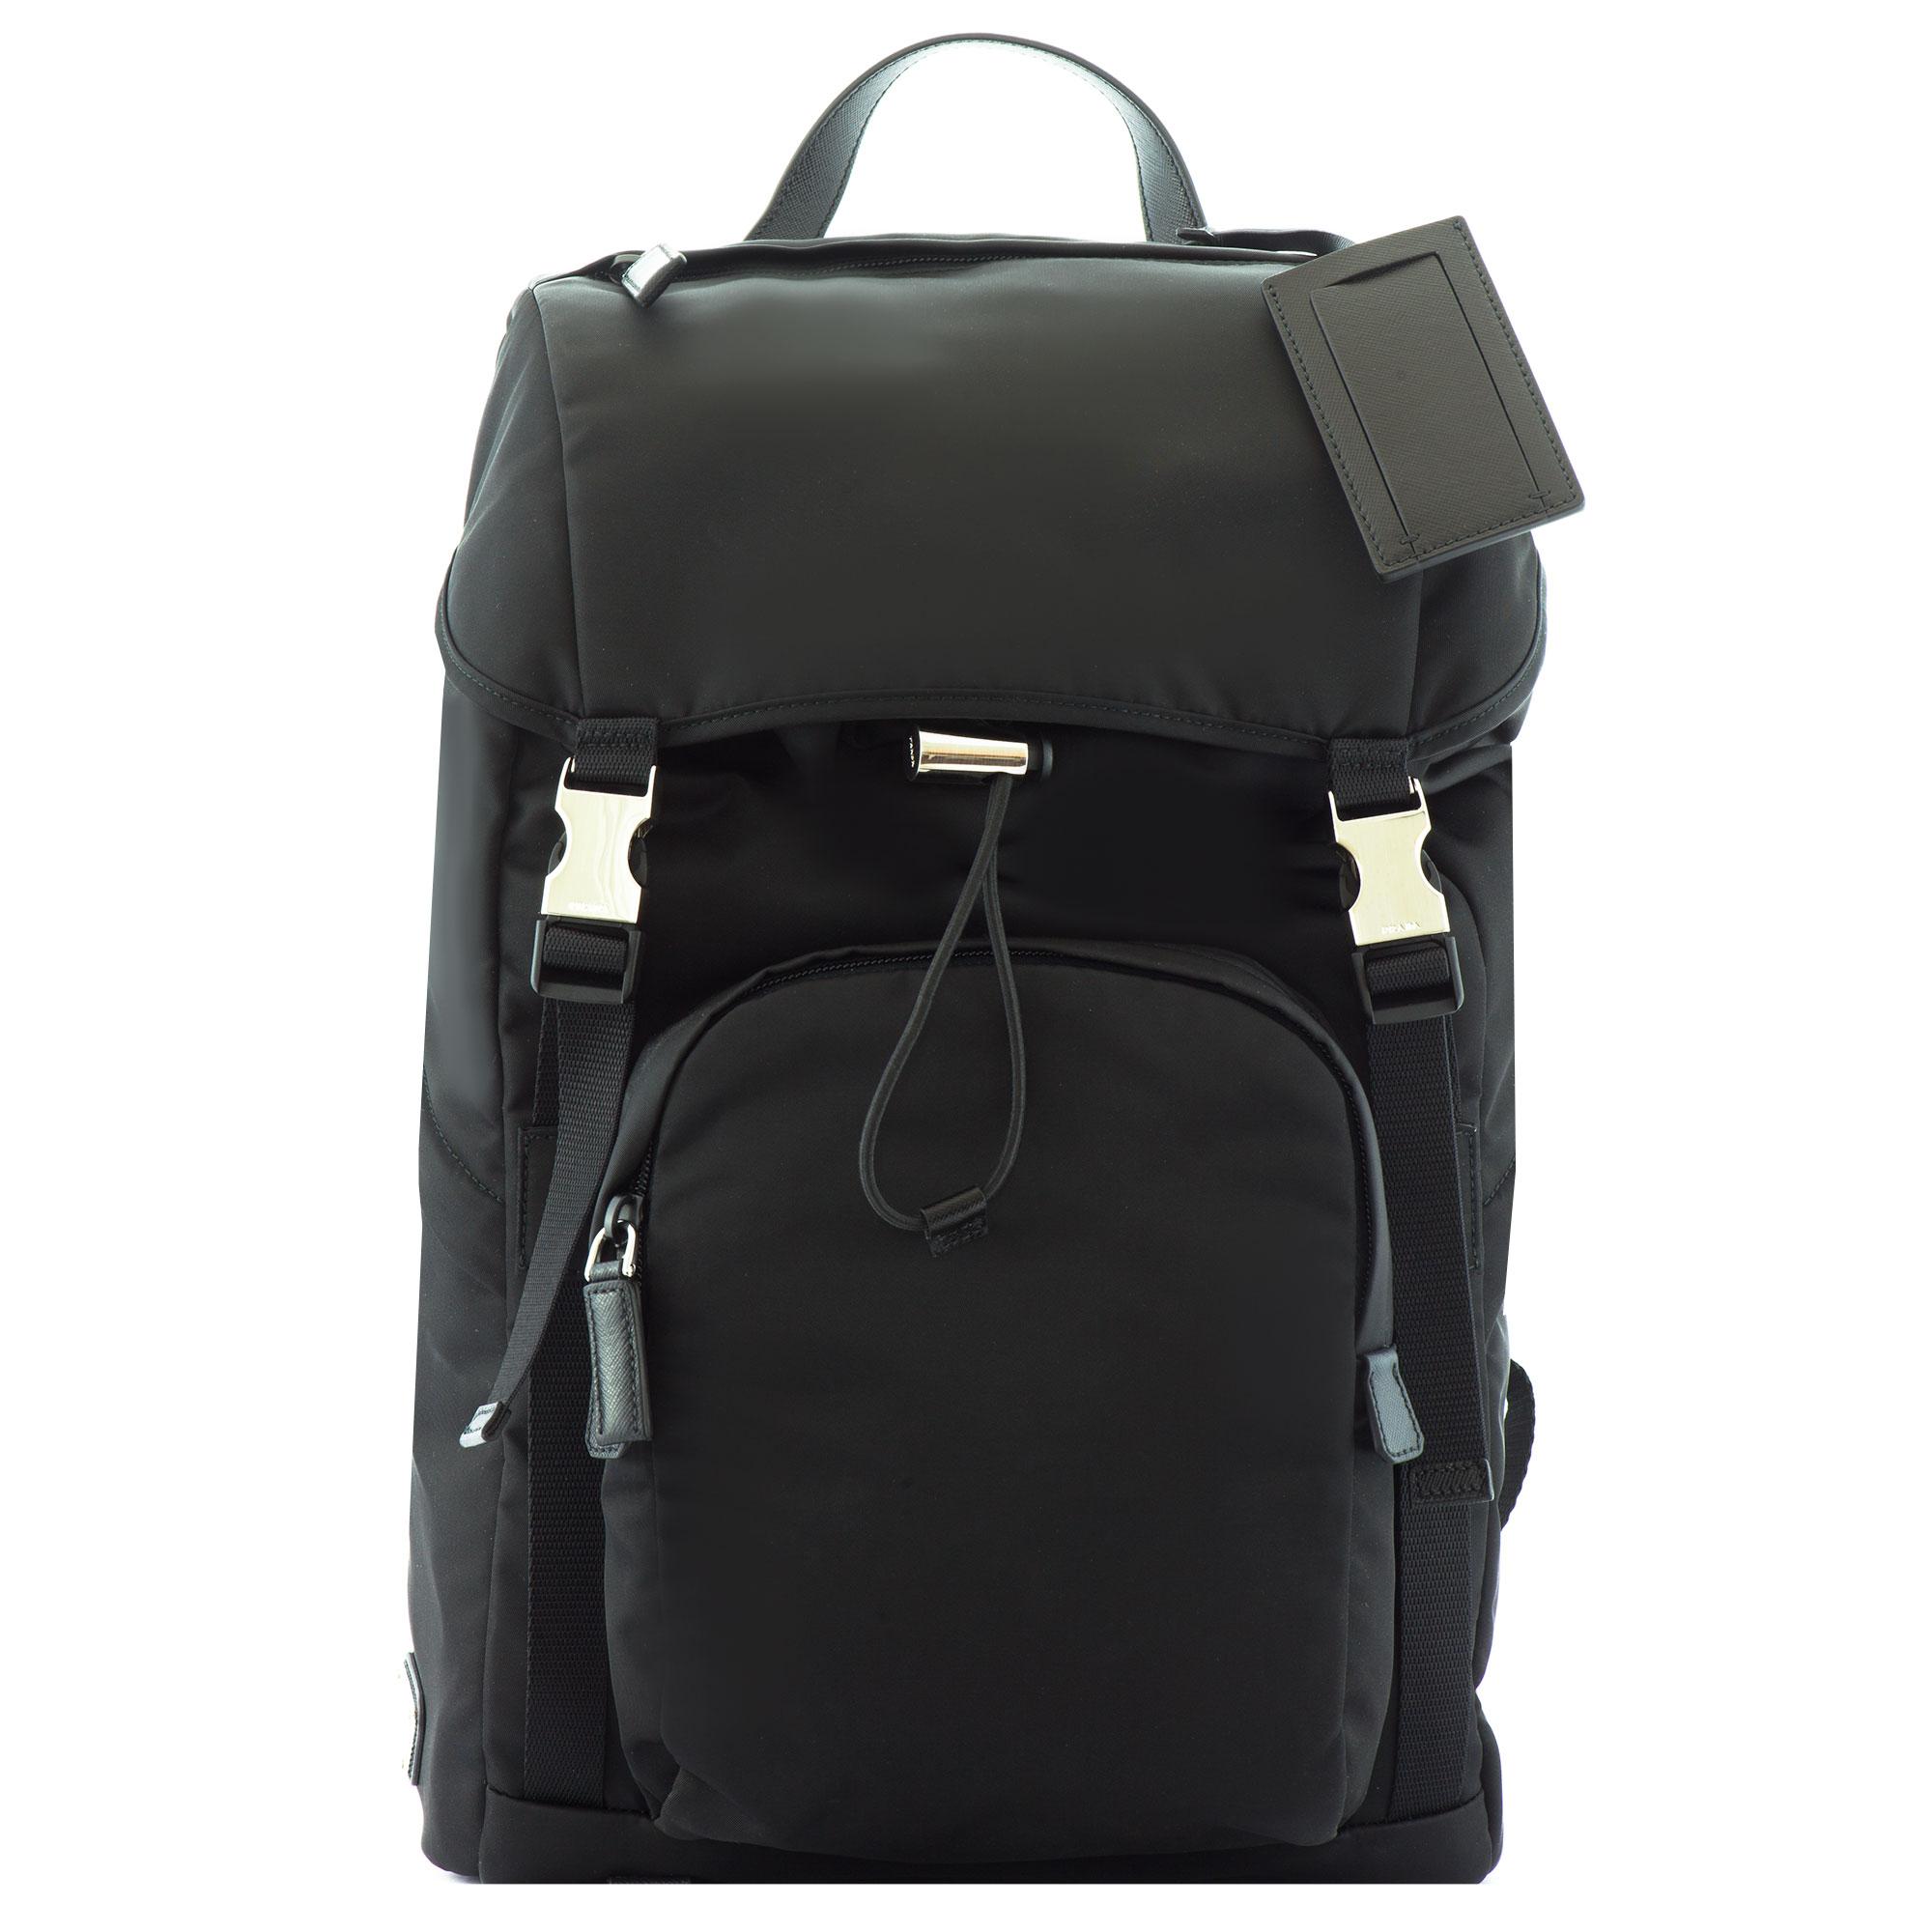 Prada Leather-trimmed Nylon Backpack in Black for Men - Lyst